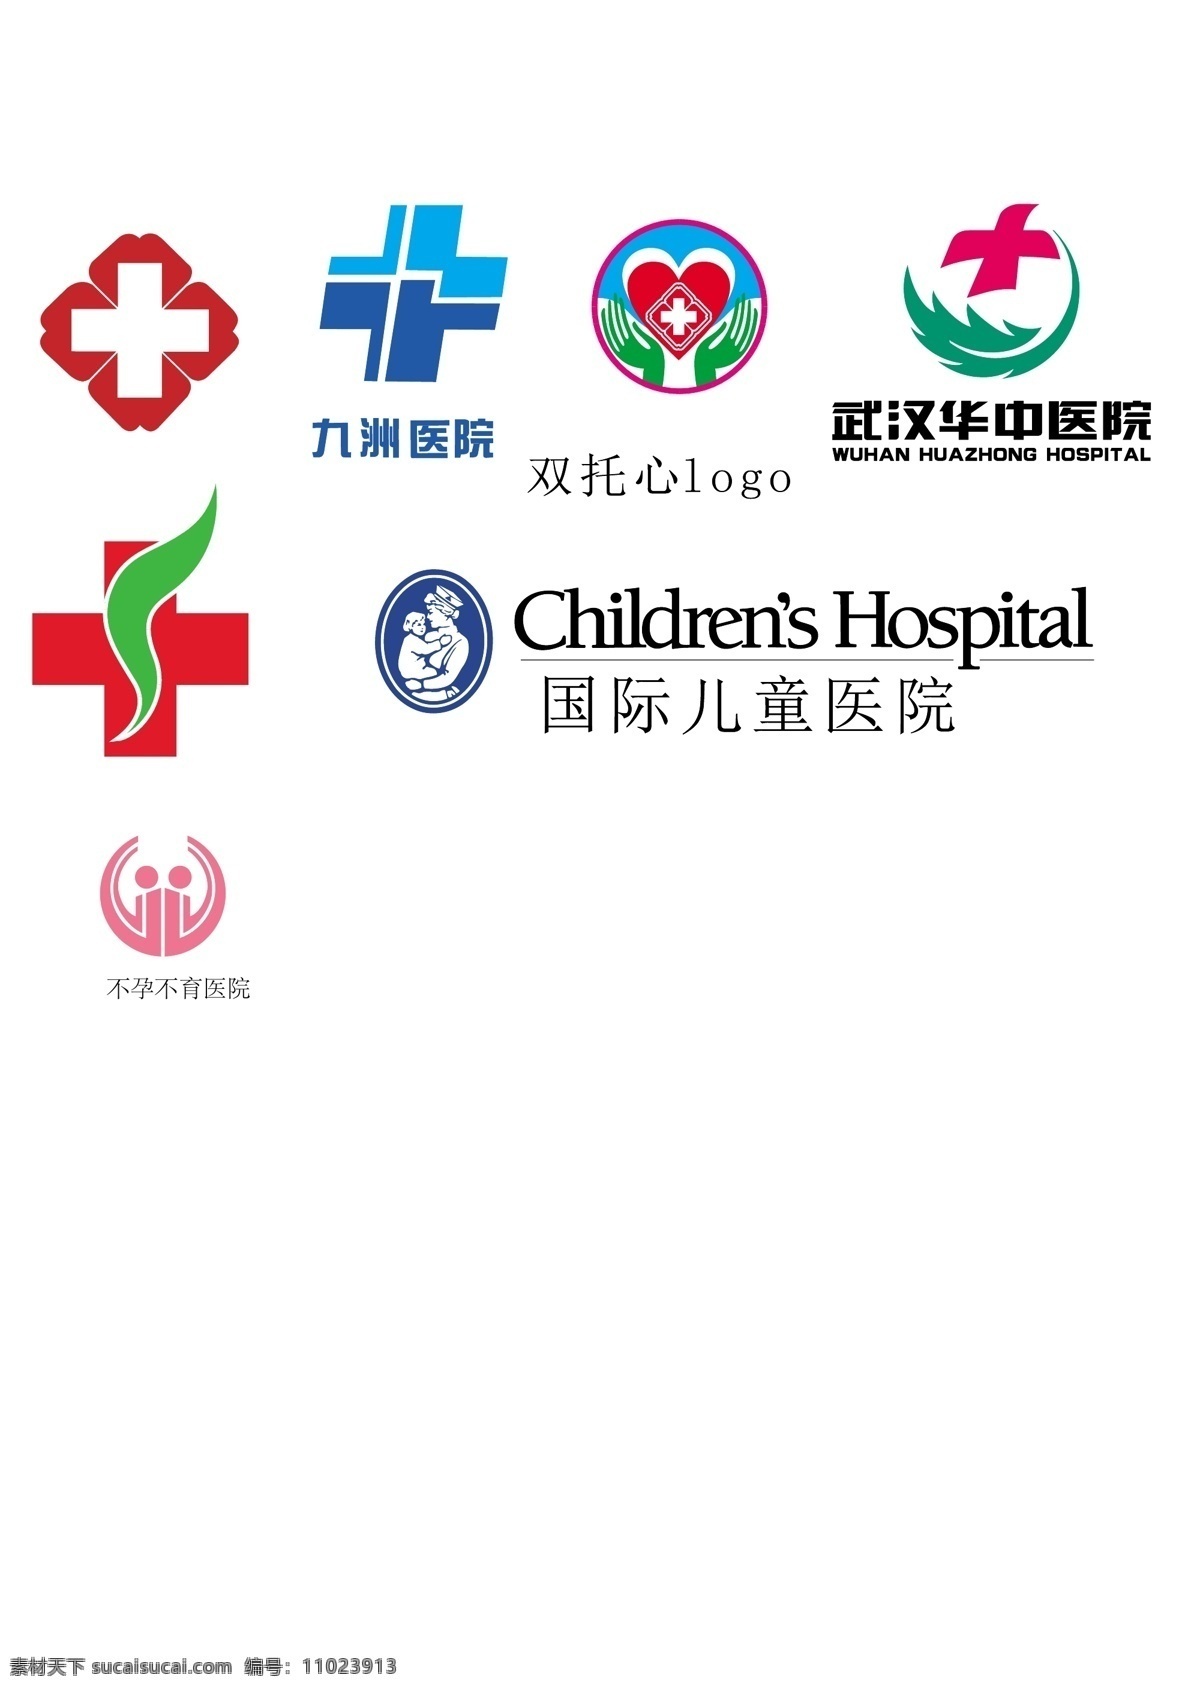 医院 标志 logo 九州医院 武汉医院 国际儿童医院 不孕不育 logo设计